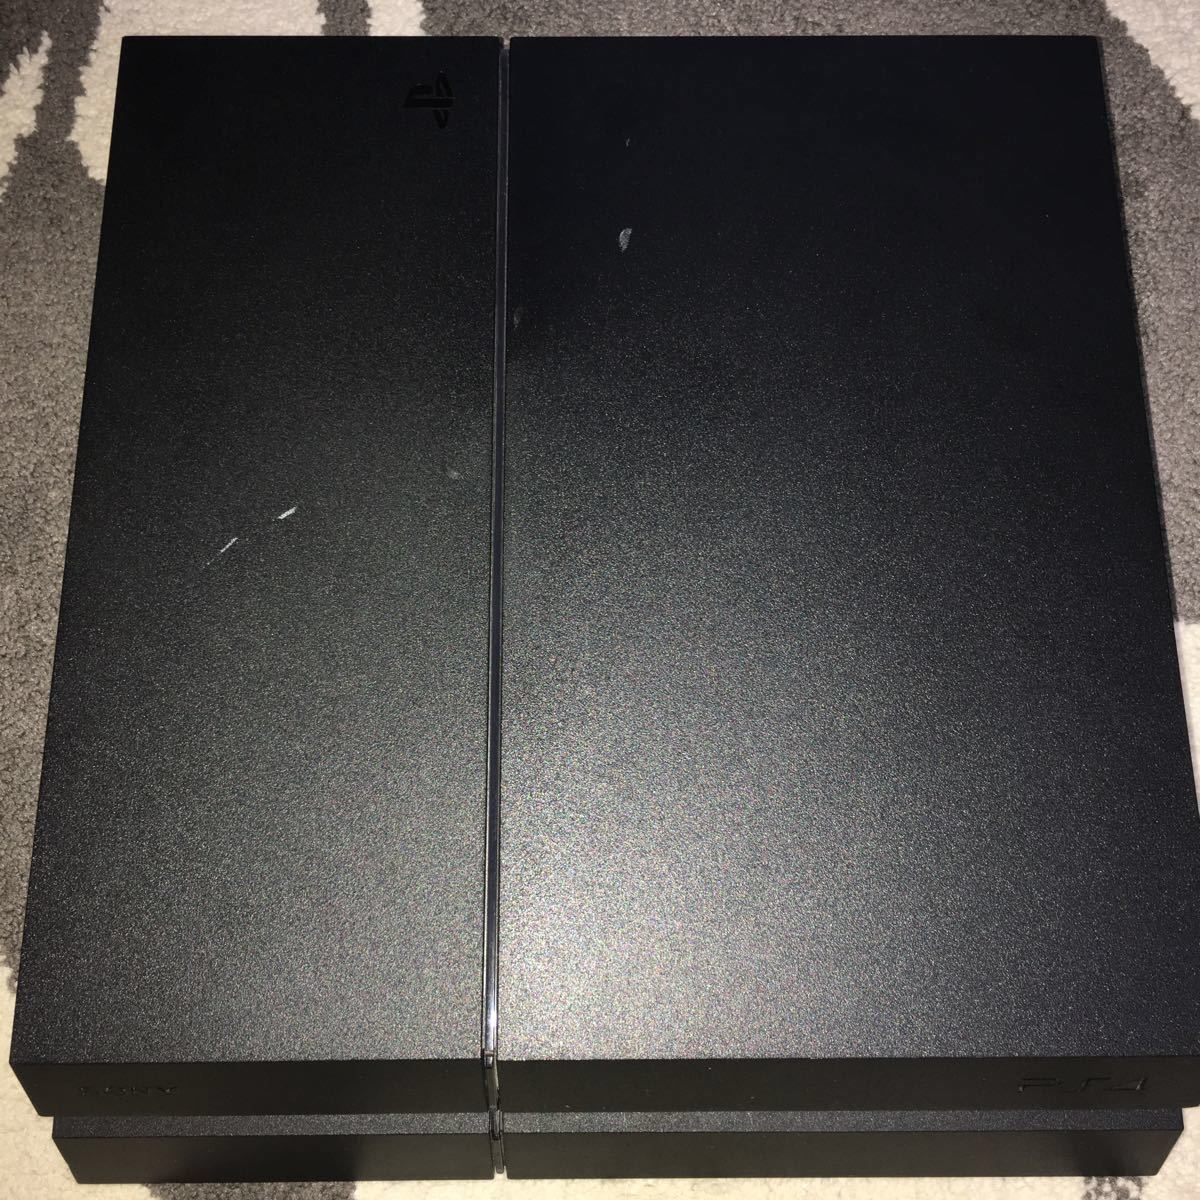  PlayStation4 ジェット・ブラック 500GB CUH-1200AB01